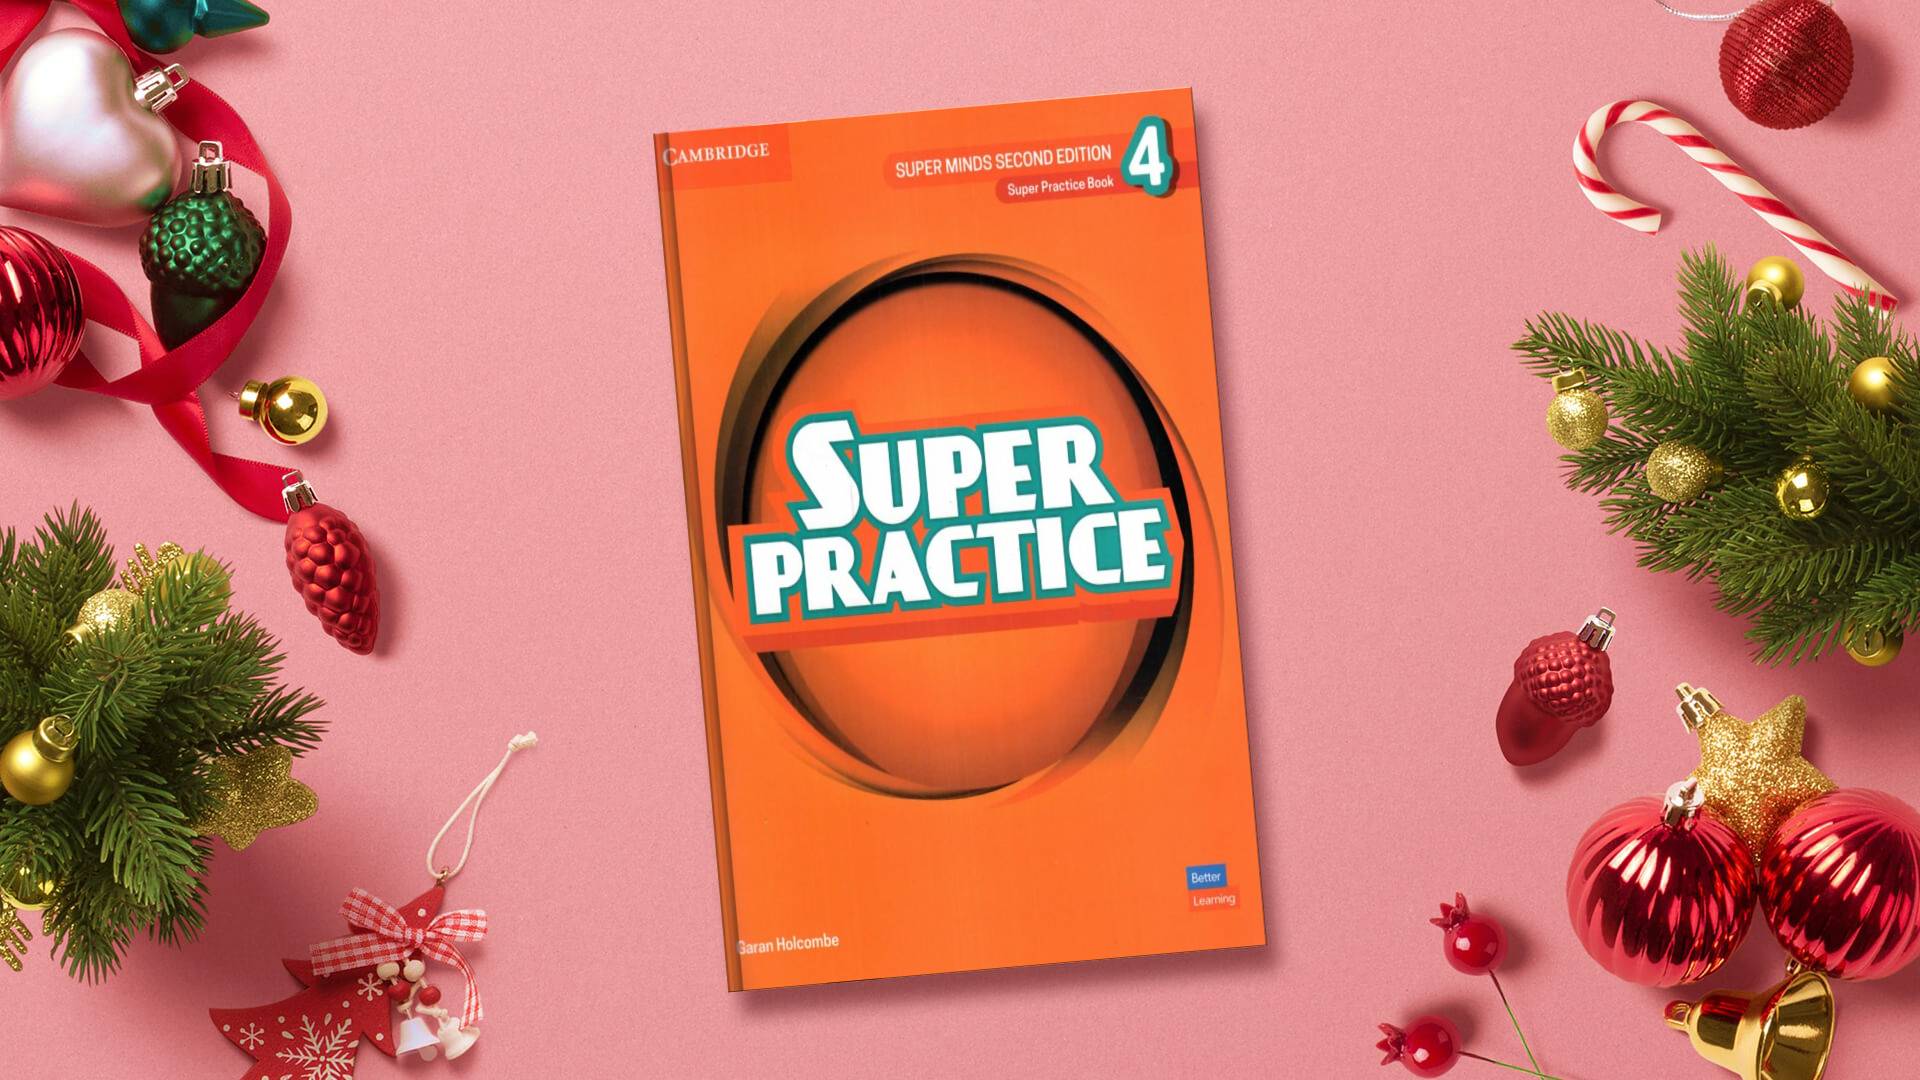 Super Minds 4 Second Edition Super Practice سوپر پرکتیس چهار ویرایش دوم